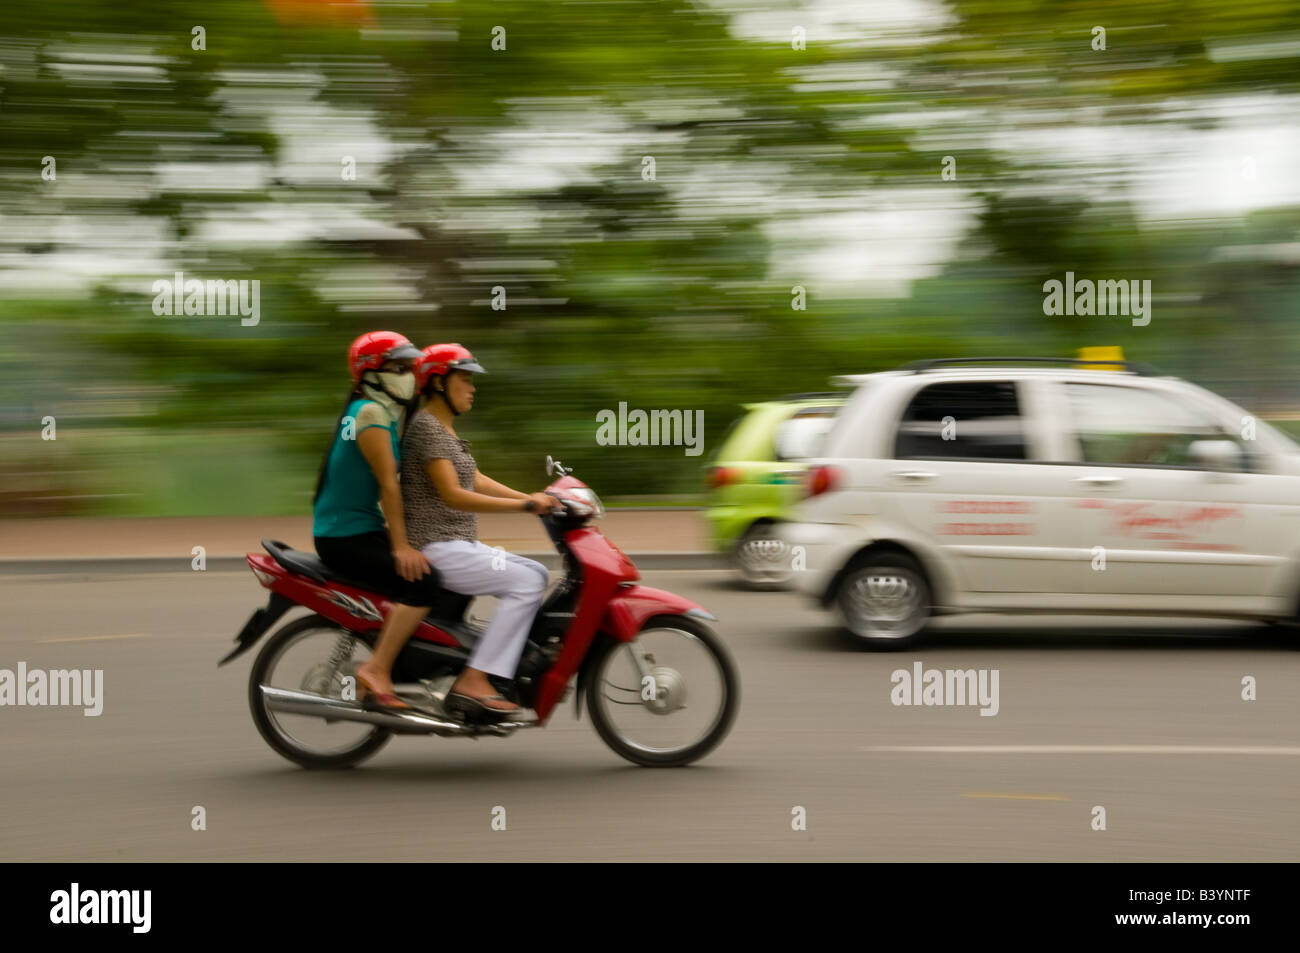 Two Vietnamese women on a motorbike in traffic Stock Photo